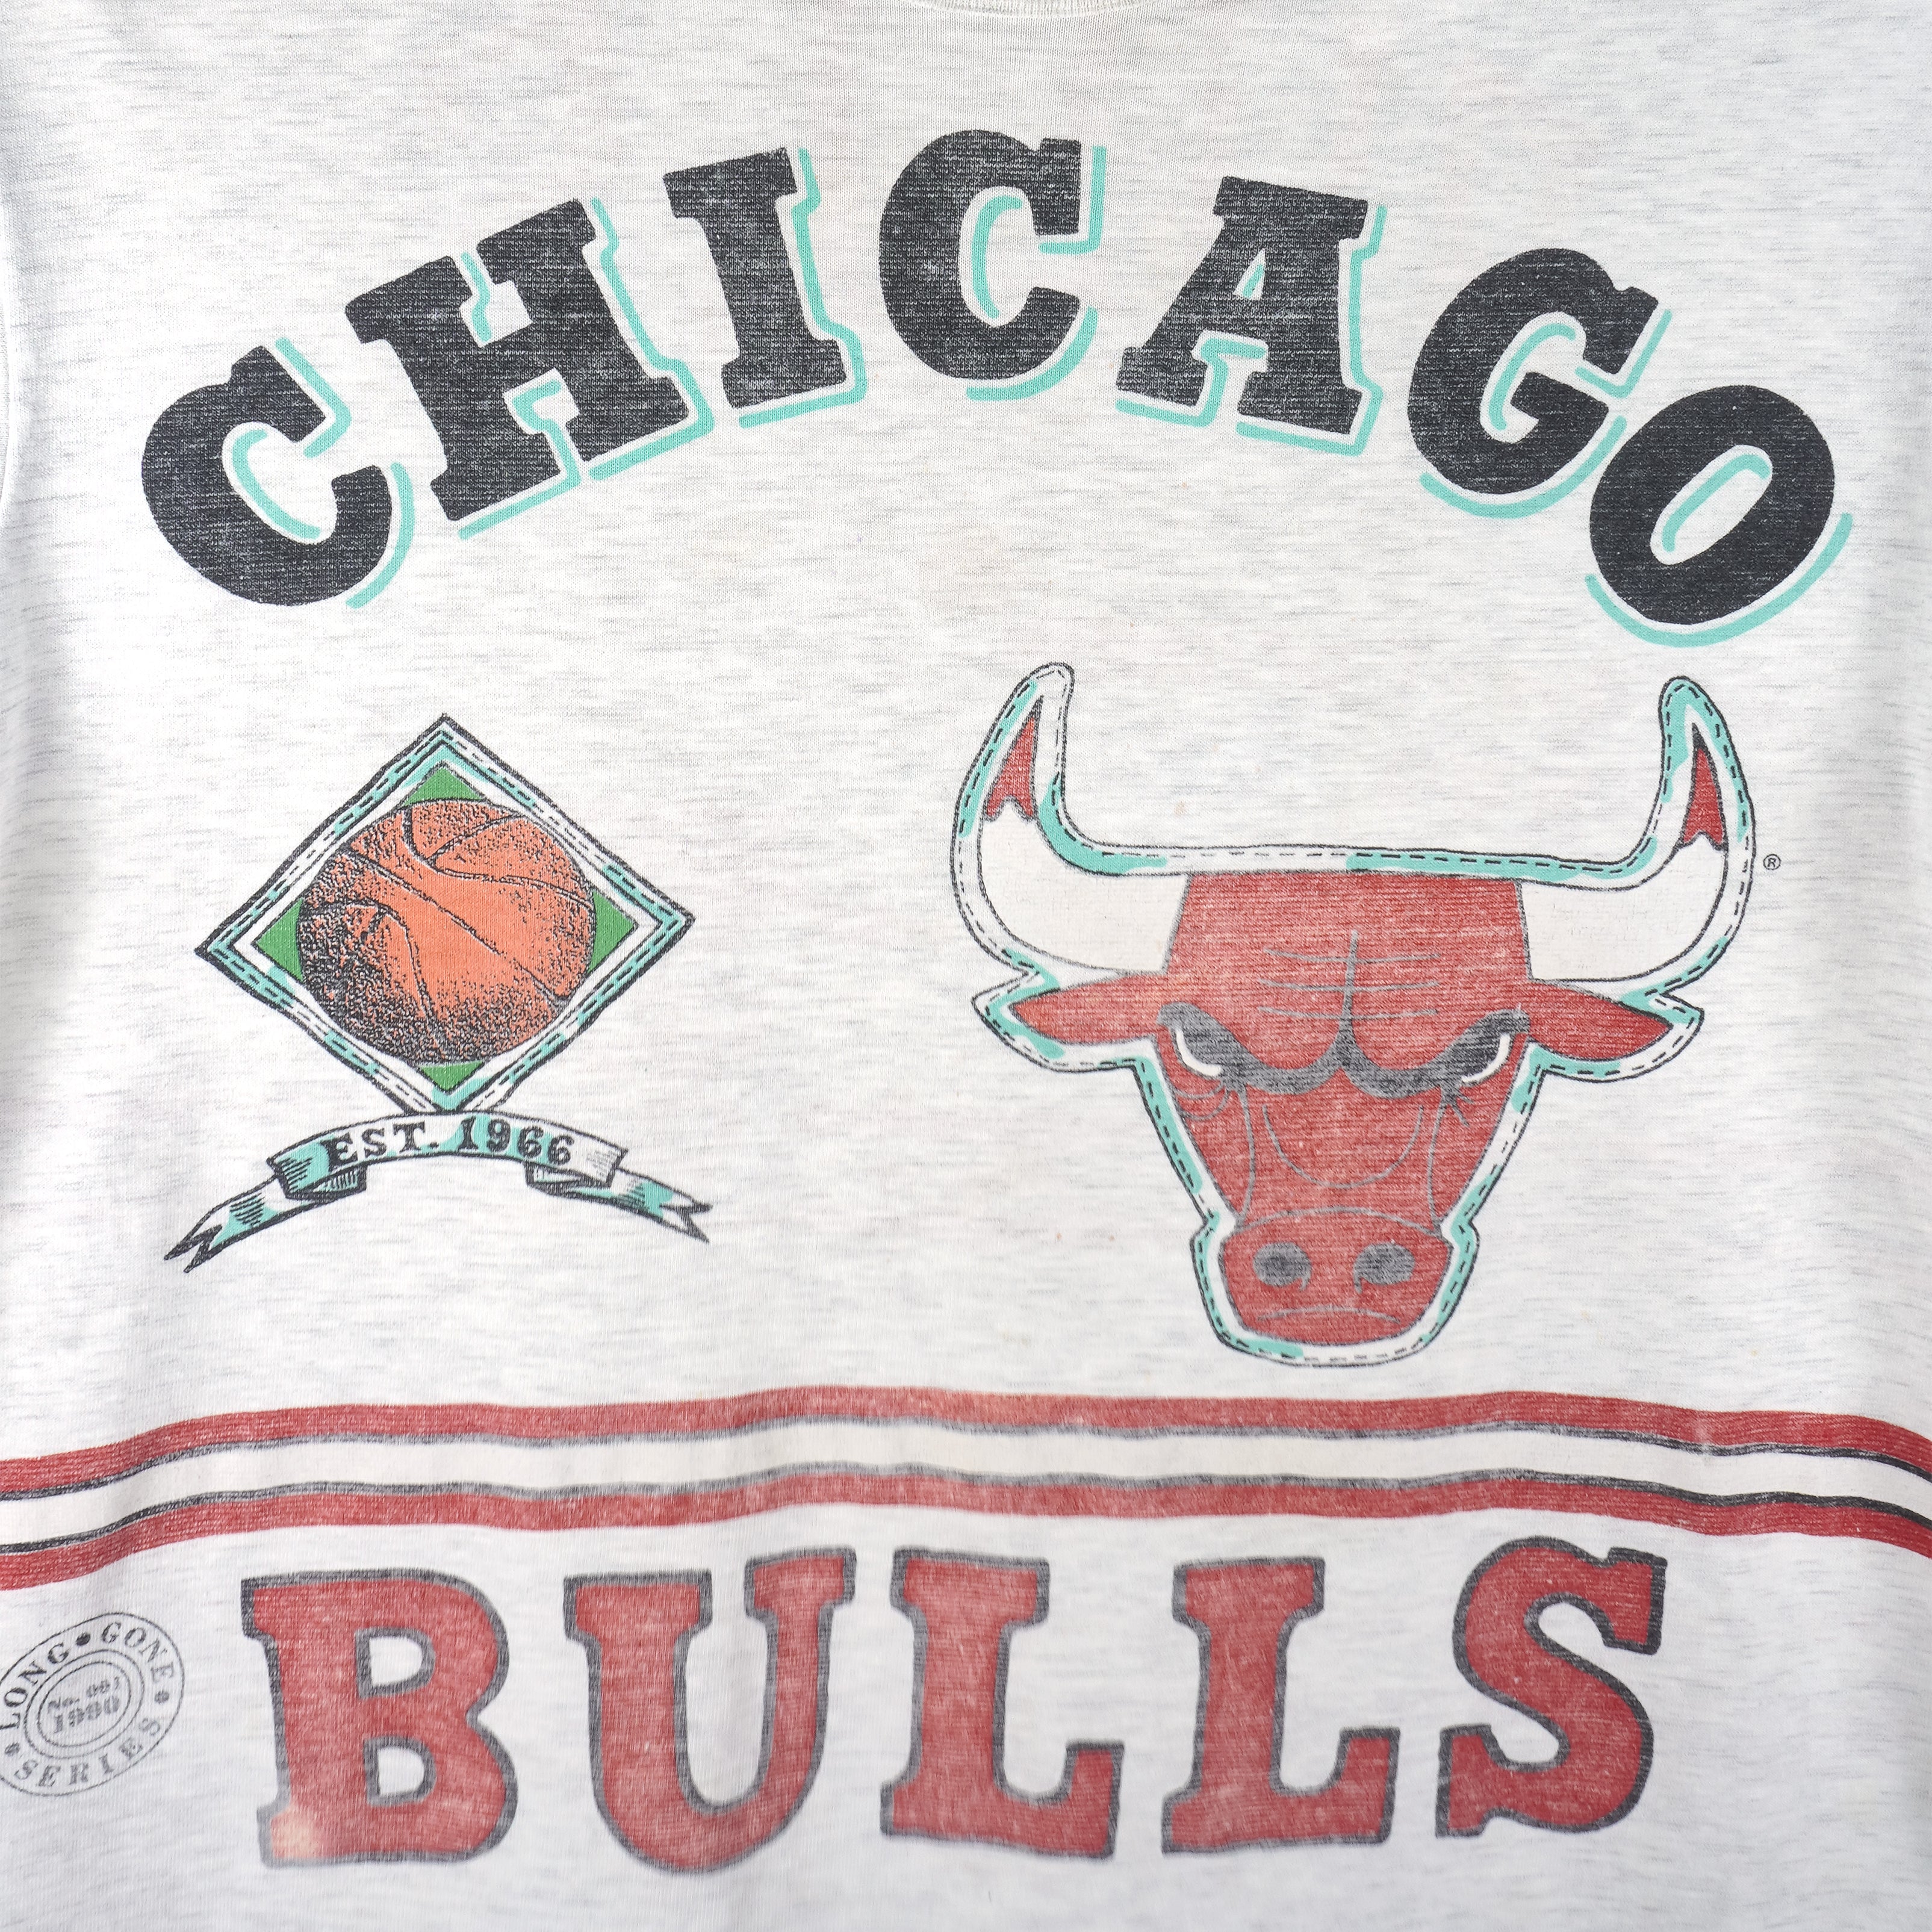 VINTAGE 1989/1990 Chicago Bulls Basketball Starter Brand Baseball